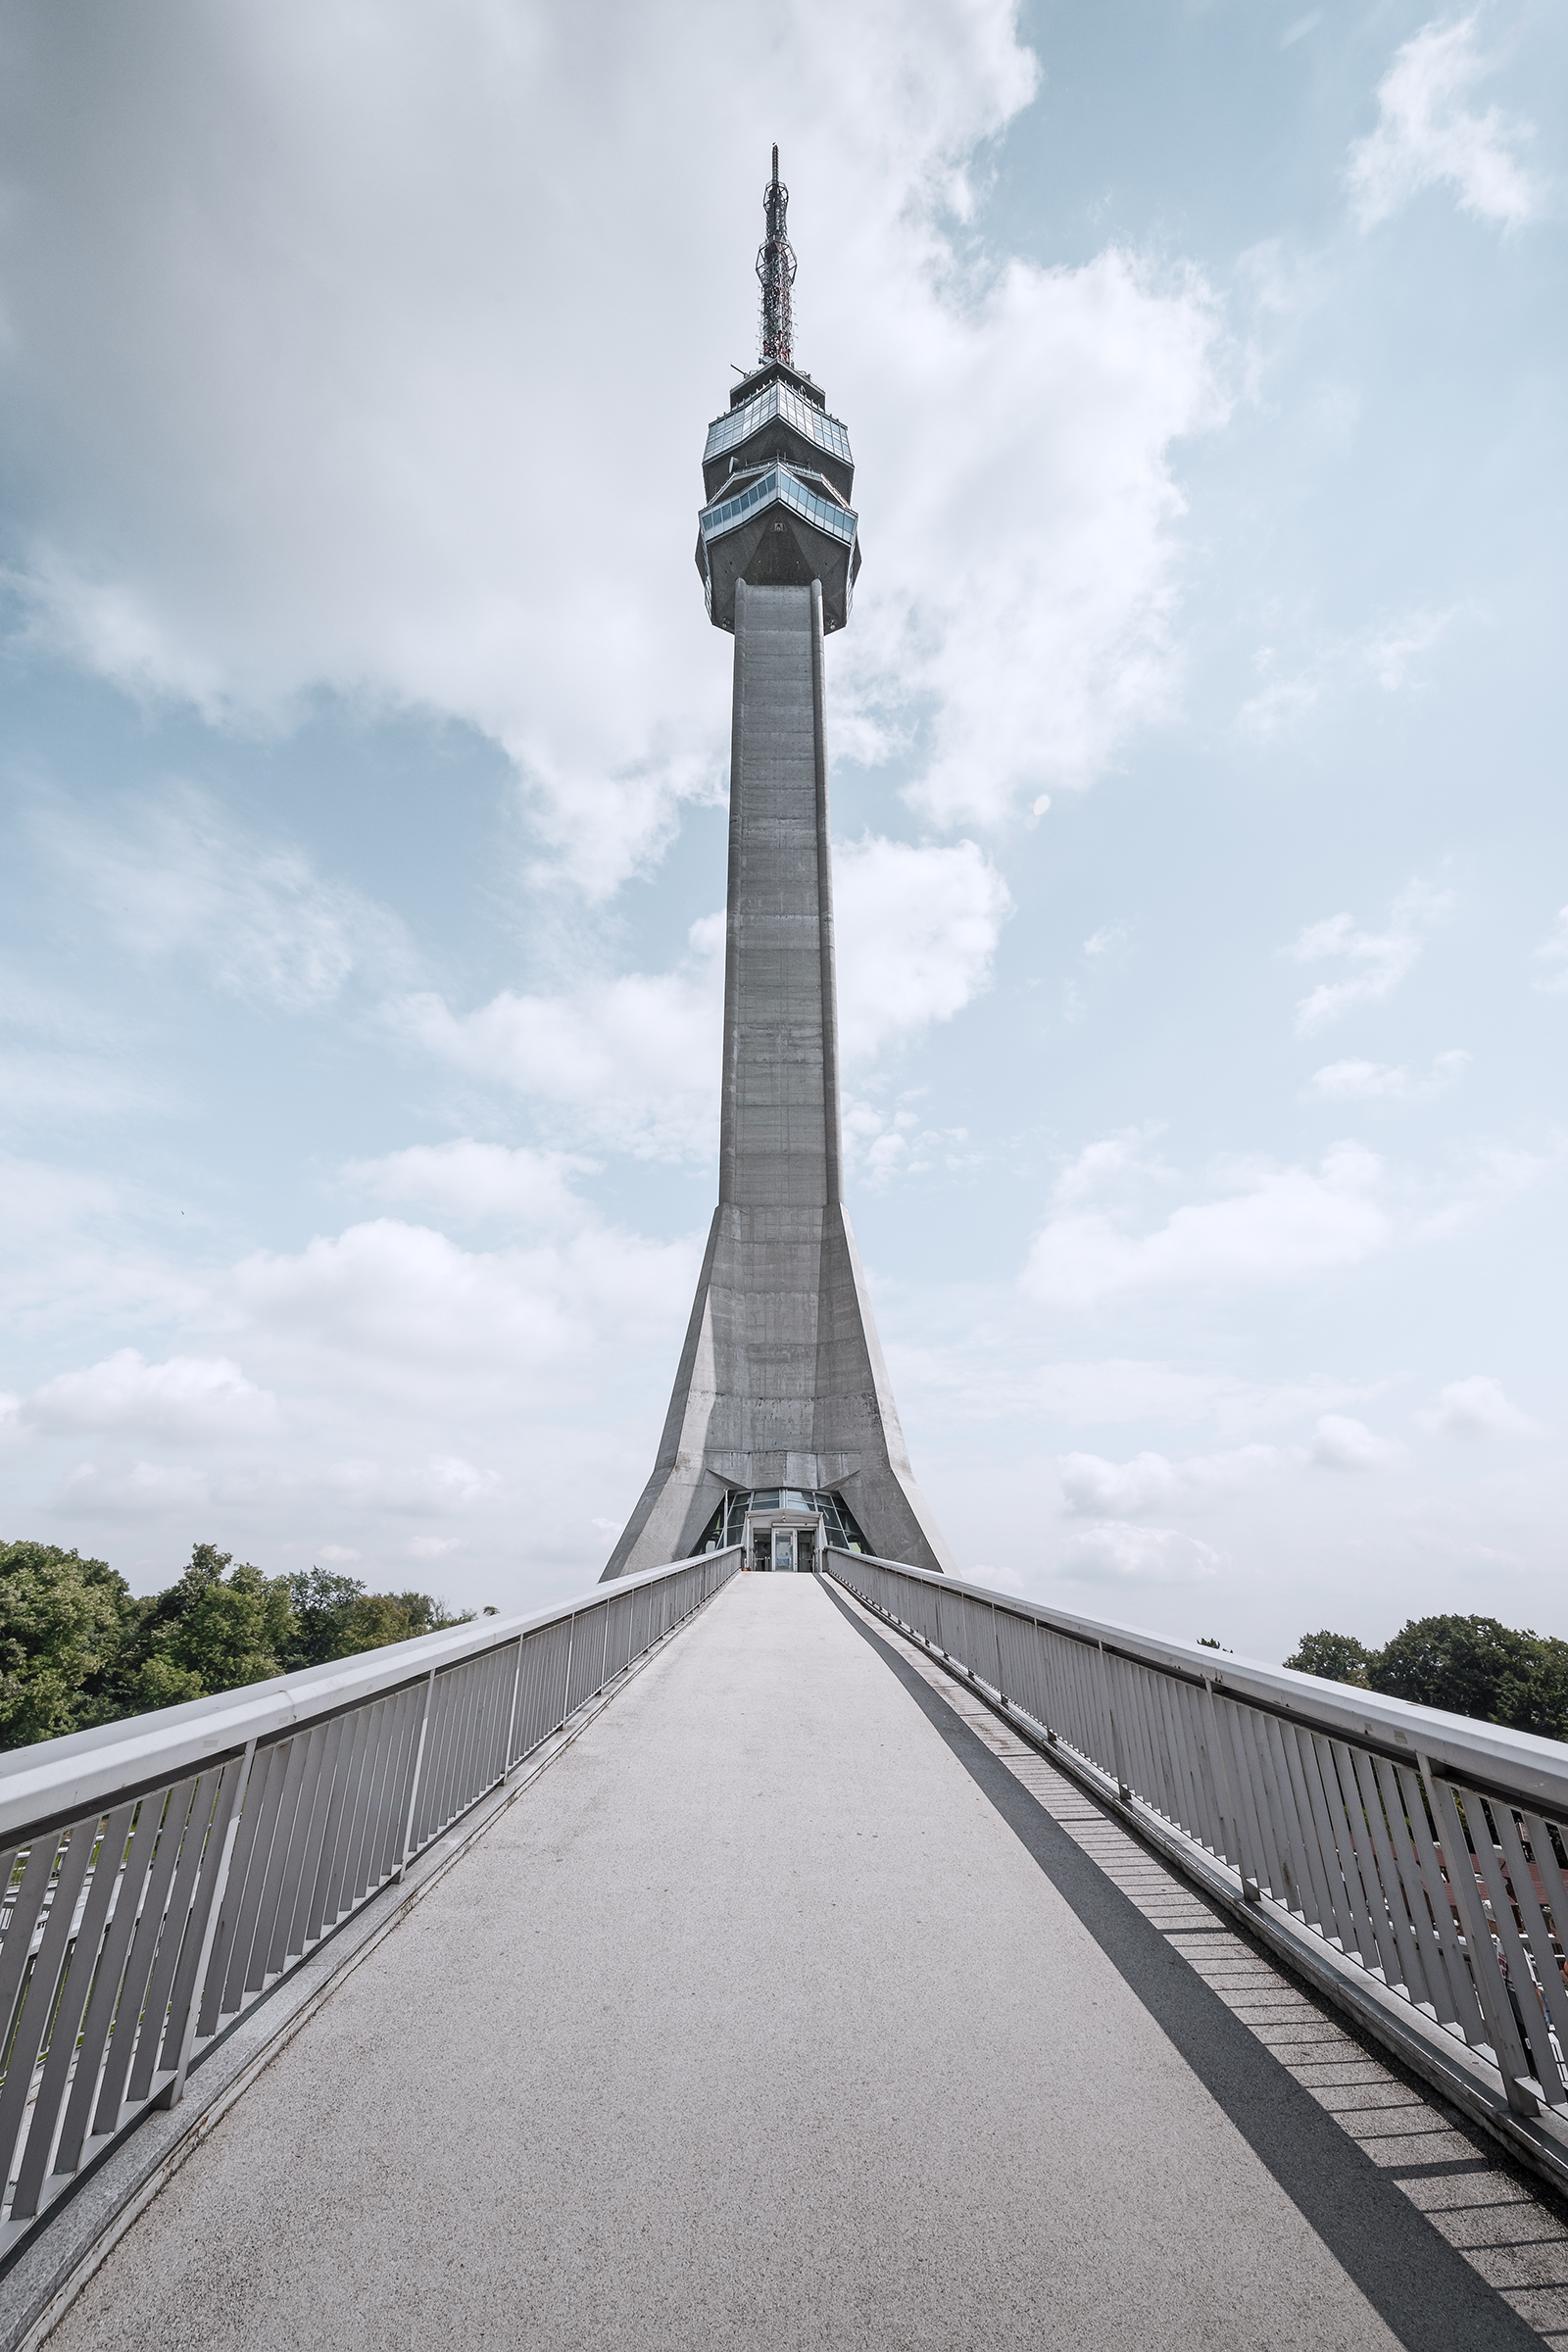 阿瓦拉塔是一个204.68米高的电信塔。 阿瓦拉塔位于贝尔格莱德的阿瓦拉山。 一对父子站在高塔内，俯